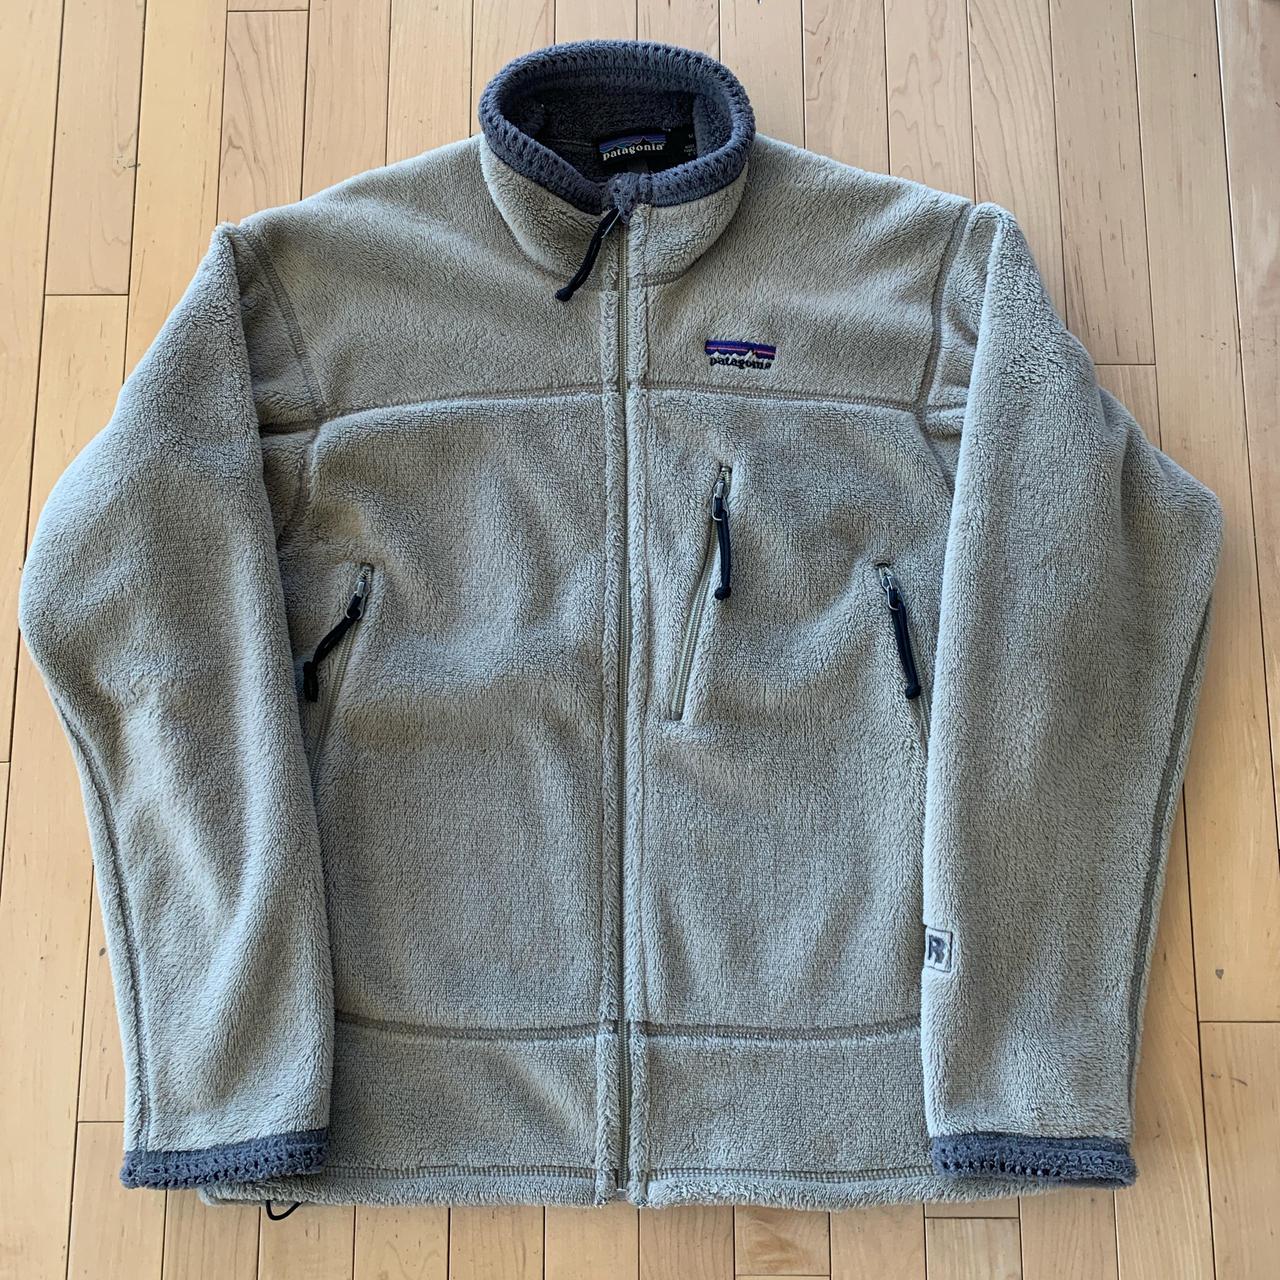 Vintage ‘02 Patagonia R4 Fleece Jacket Perfect... - Depop